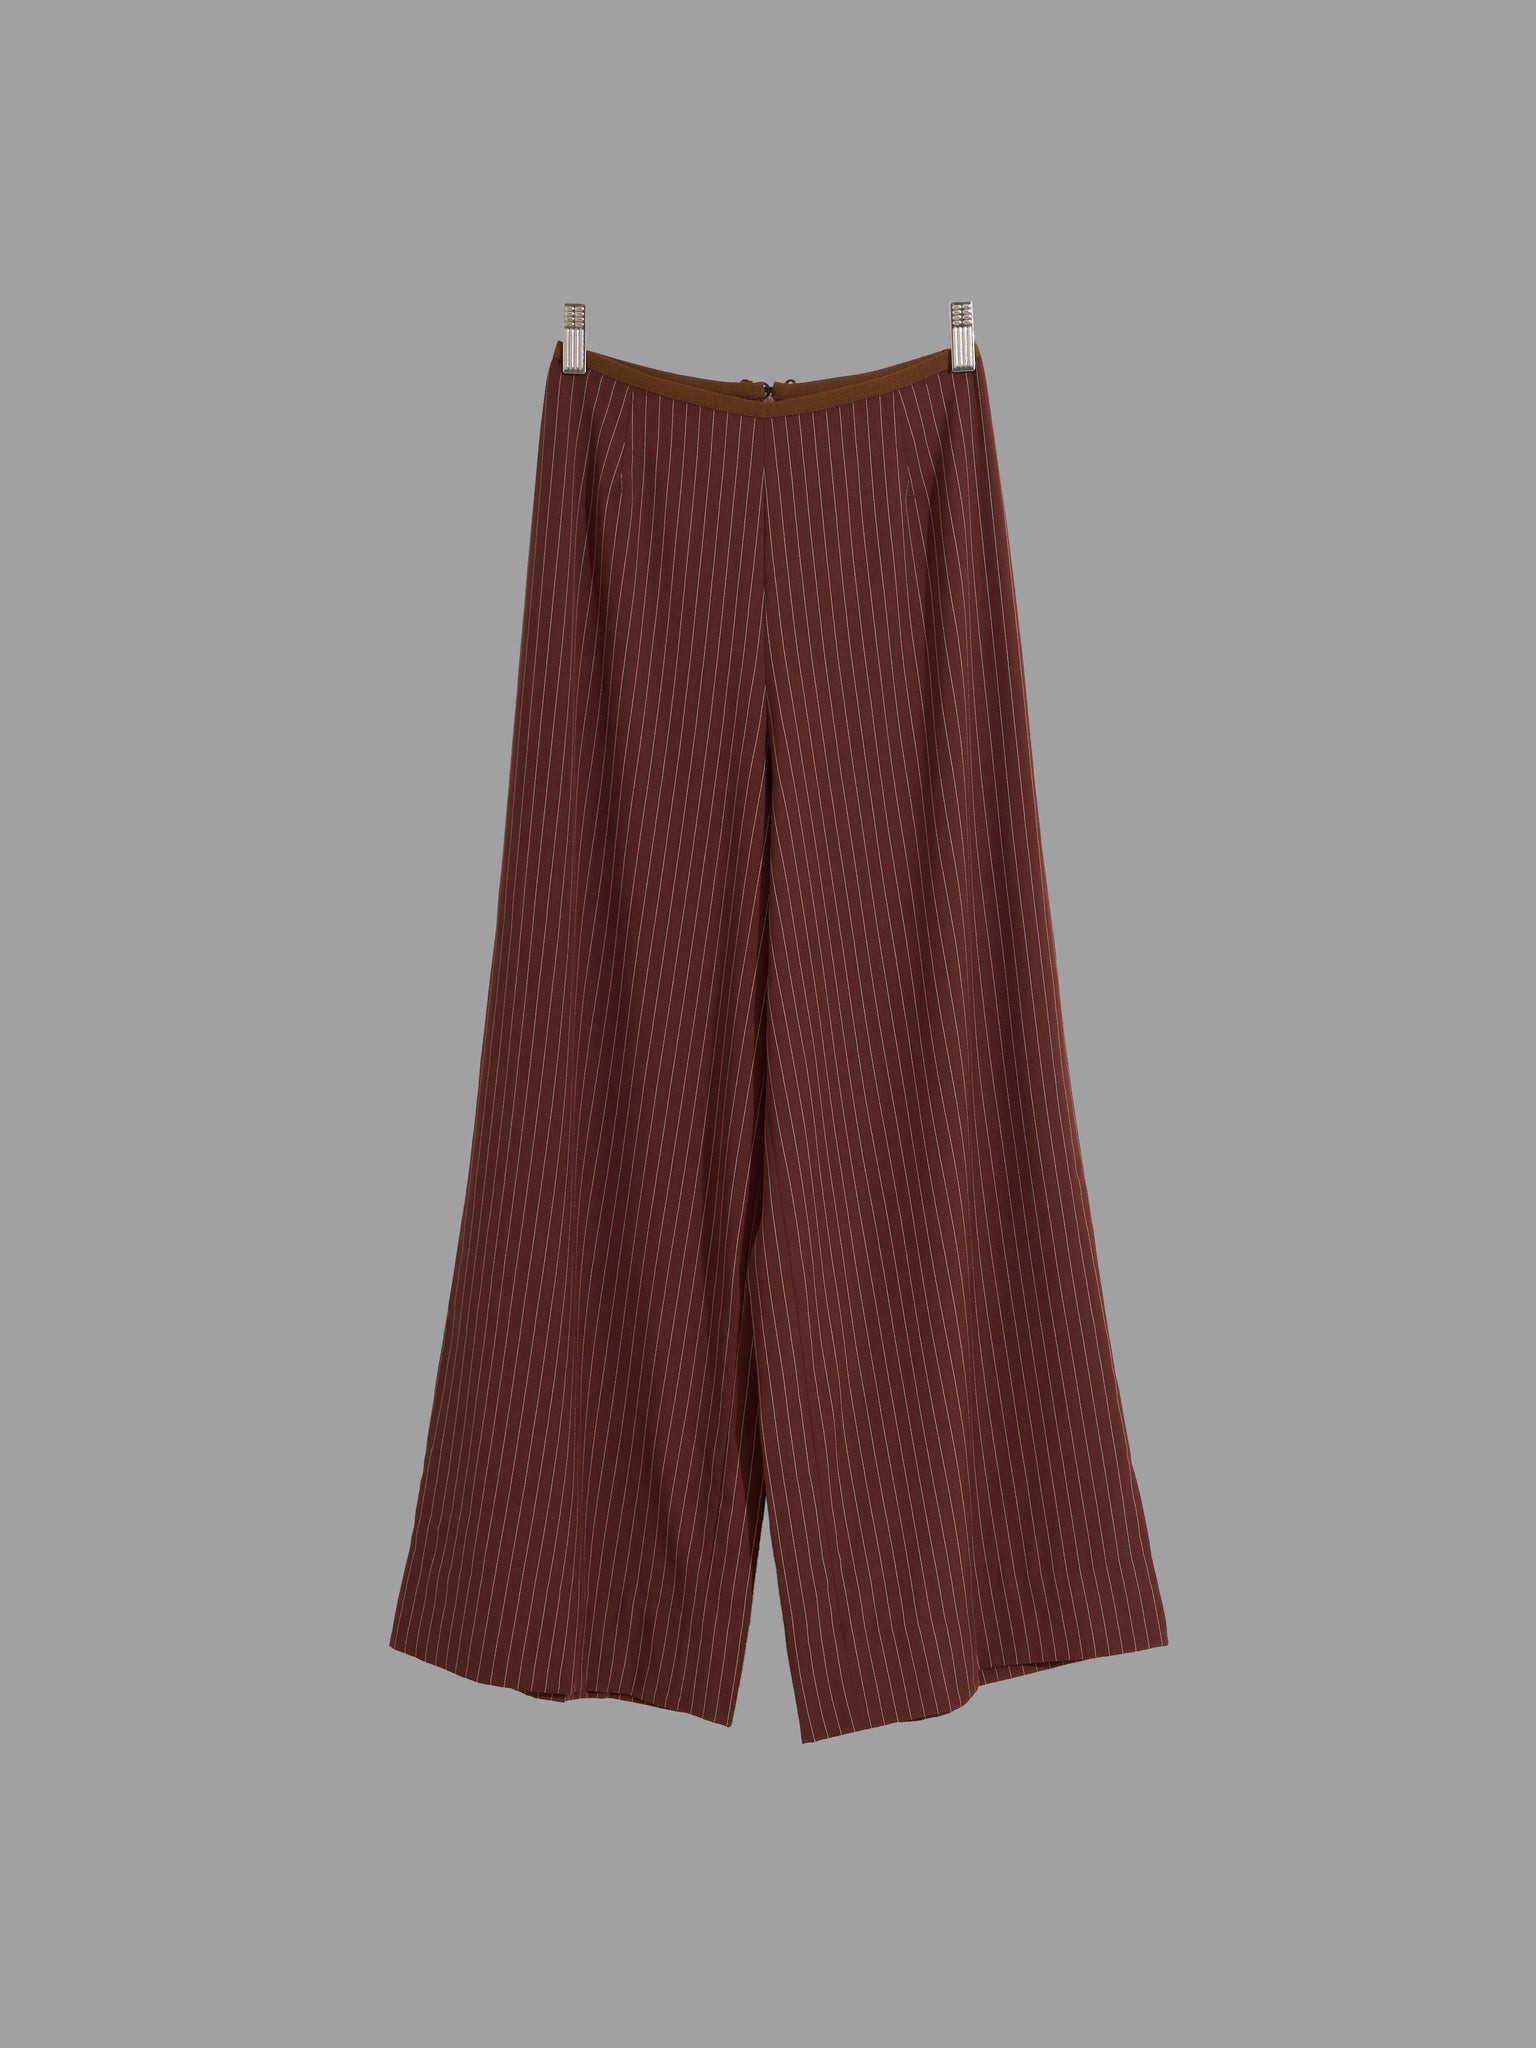 Jean Paul Gaultier Classique 1990s brown wool stripe wide leg trousers - approx S XS